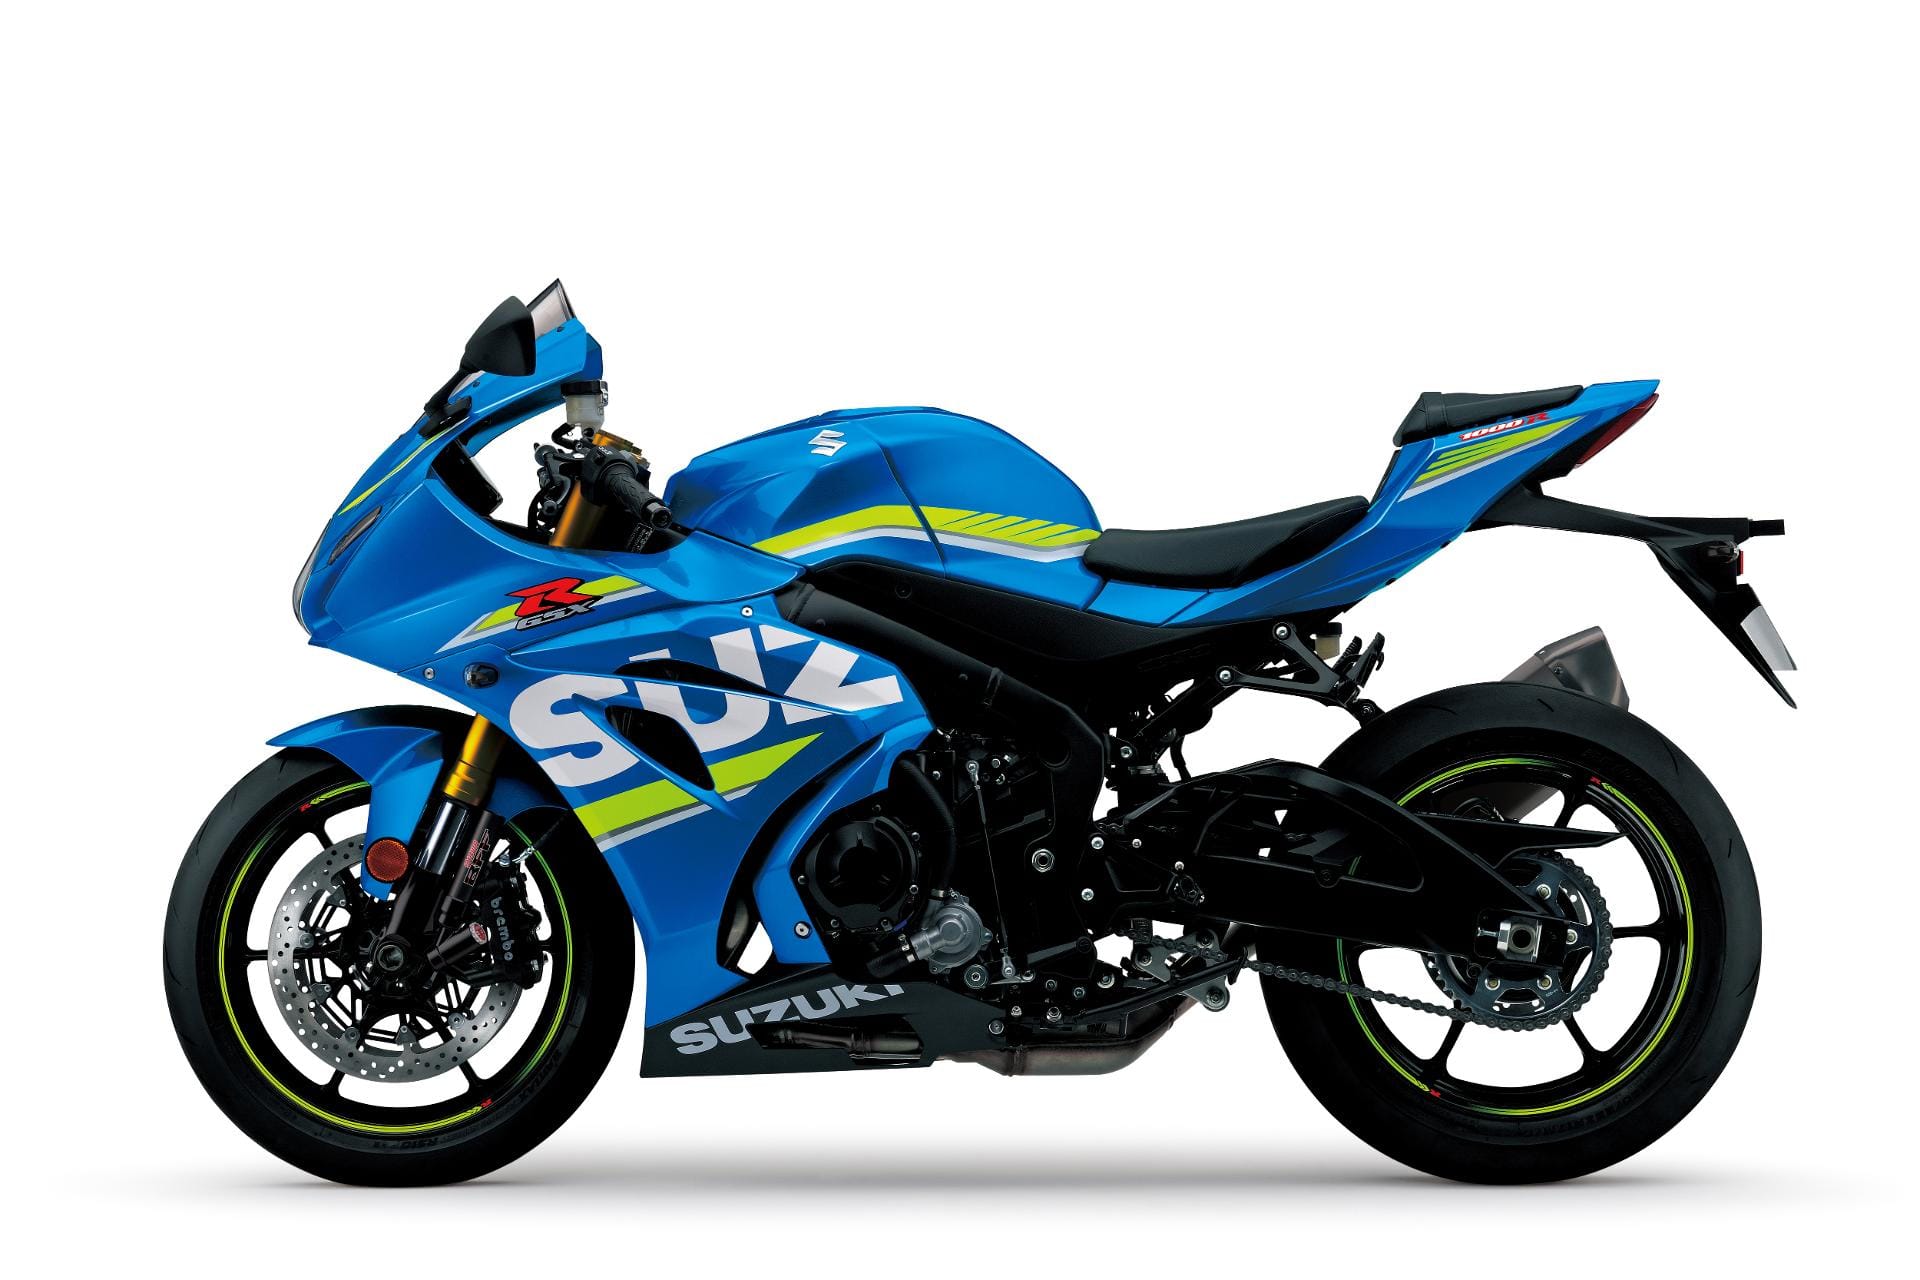 Suzuki GSX-R 1000 Concept Bike. Das Modell wurde komplett neu entwickelt, erhält einen leichteren Rahmen und einen deutlich stärkeren Motor.